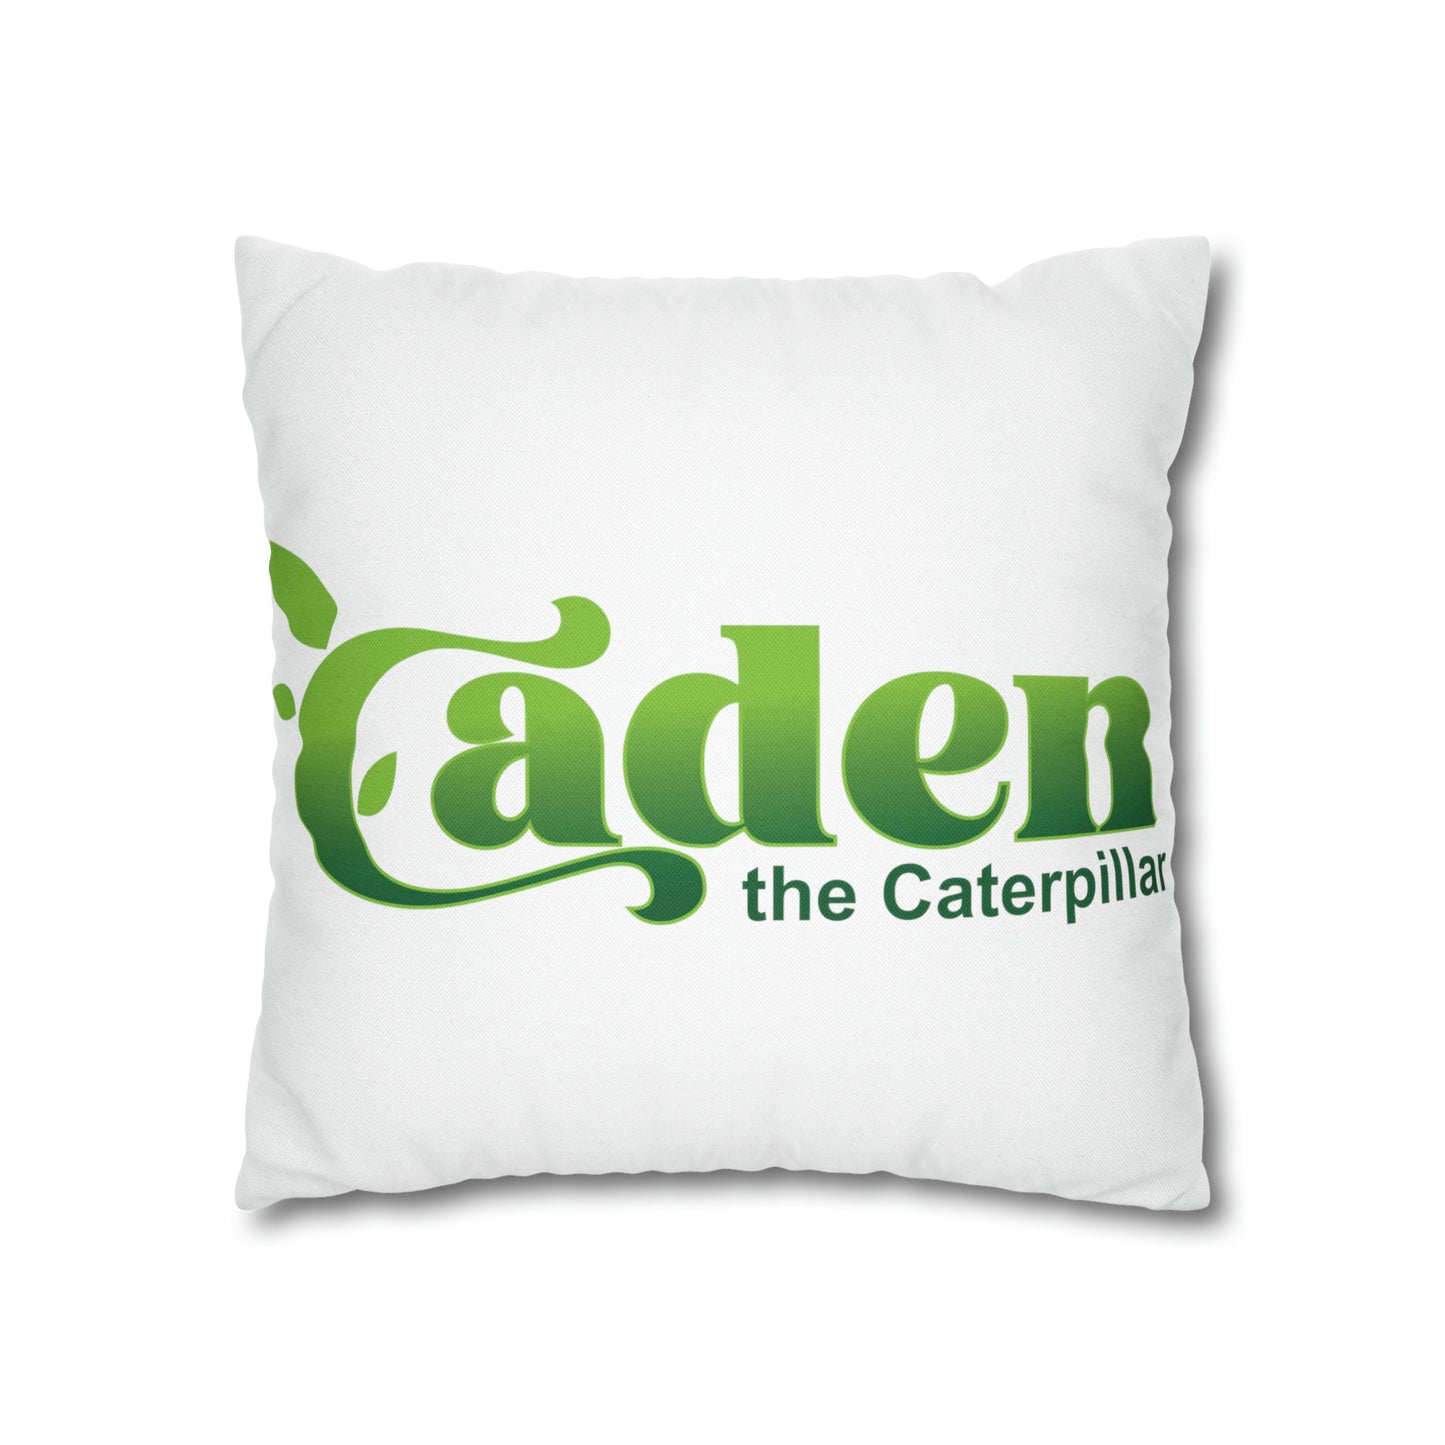 Caden Spun Polyester Square Pillow Case